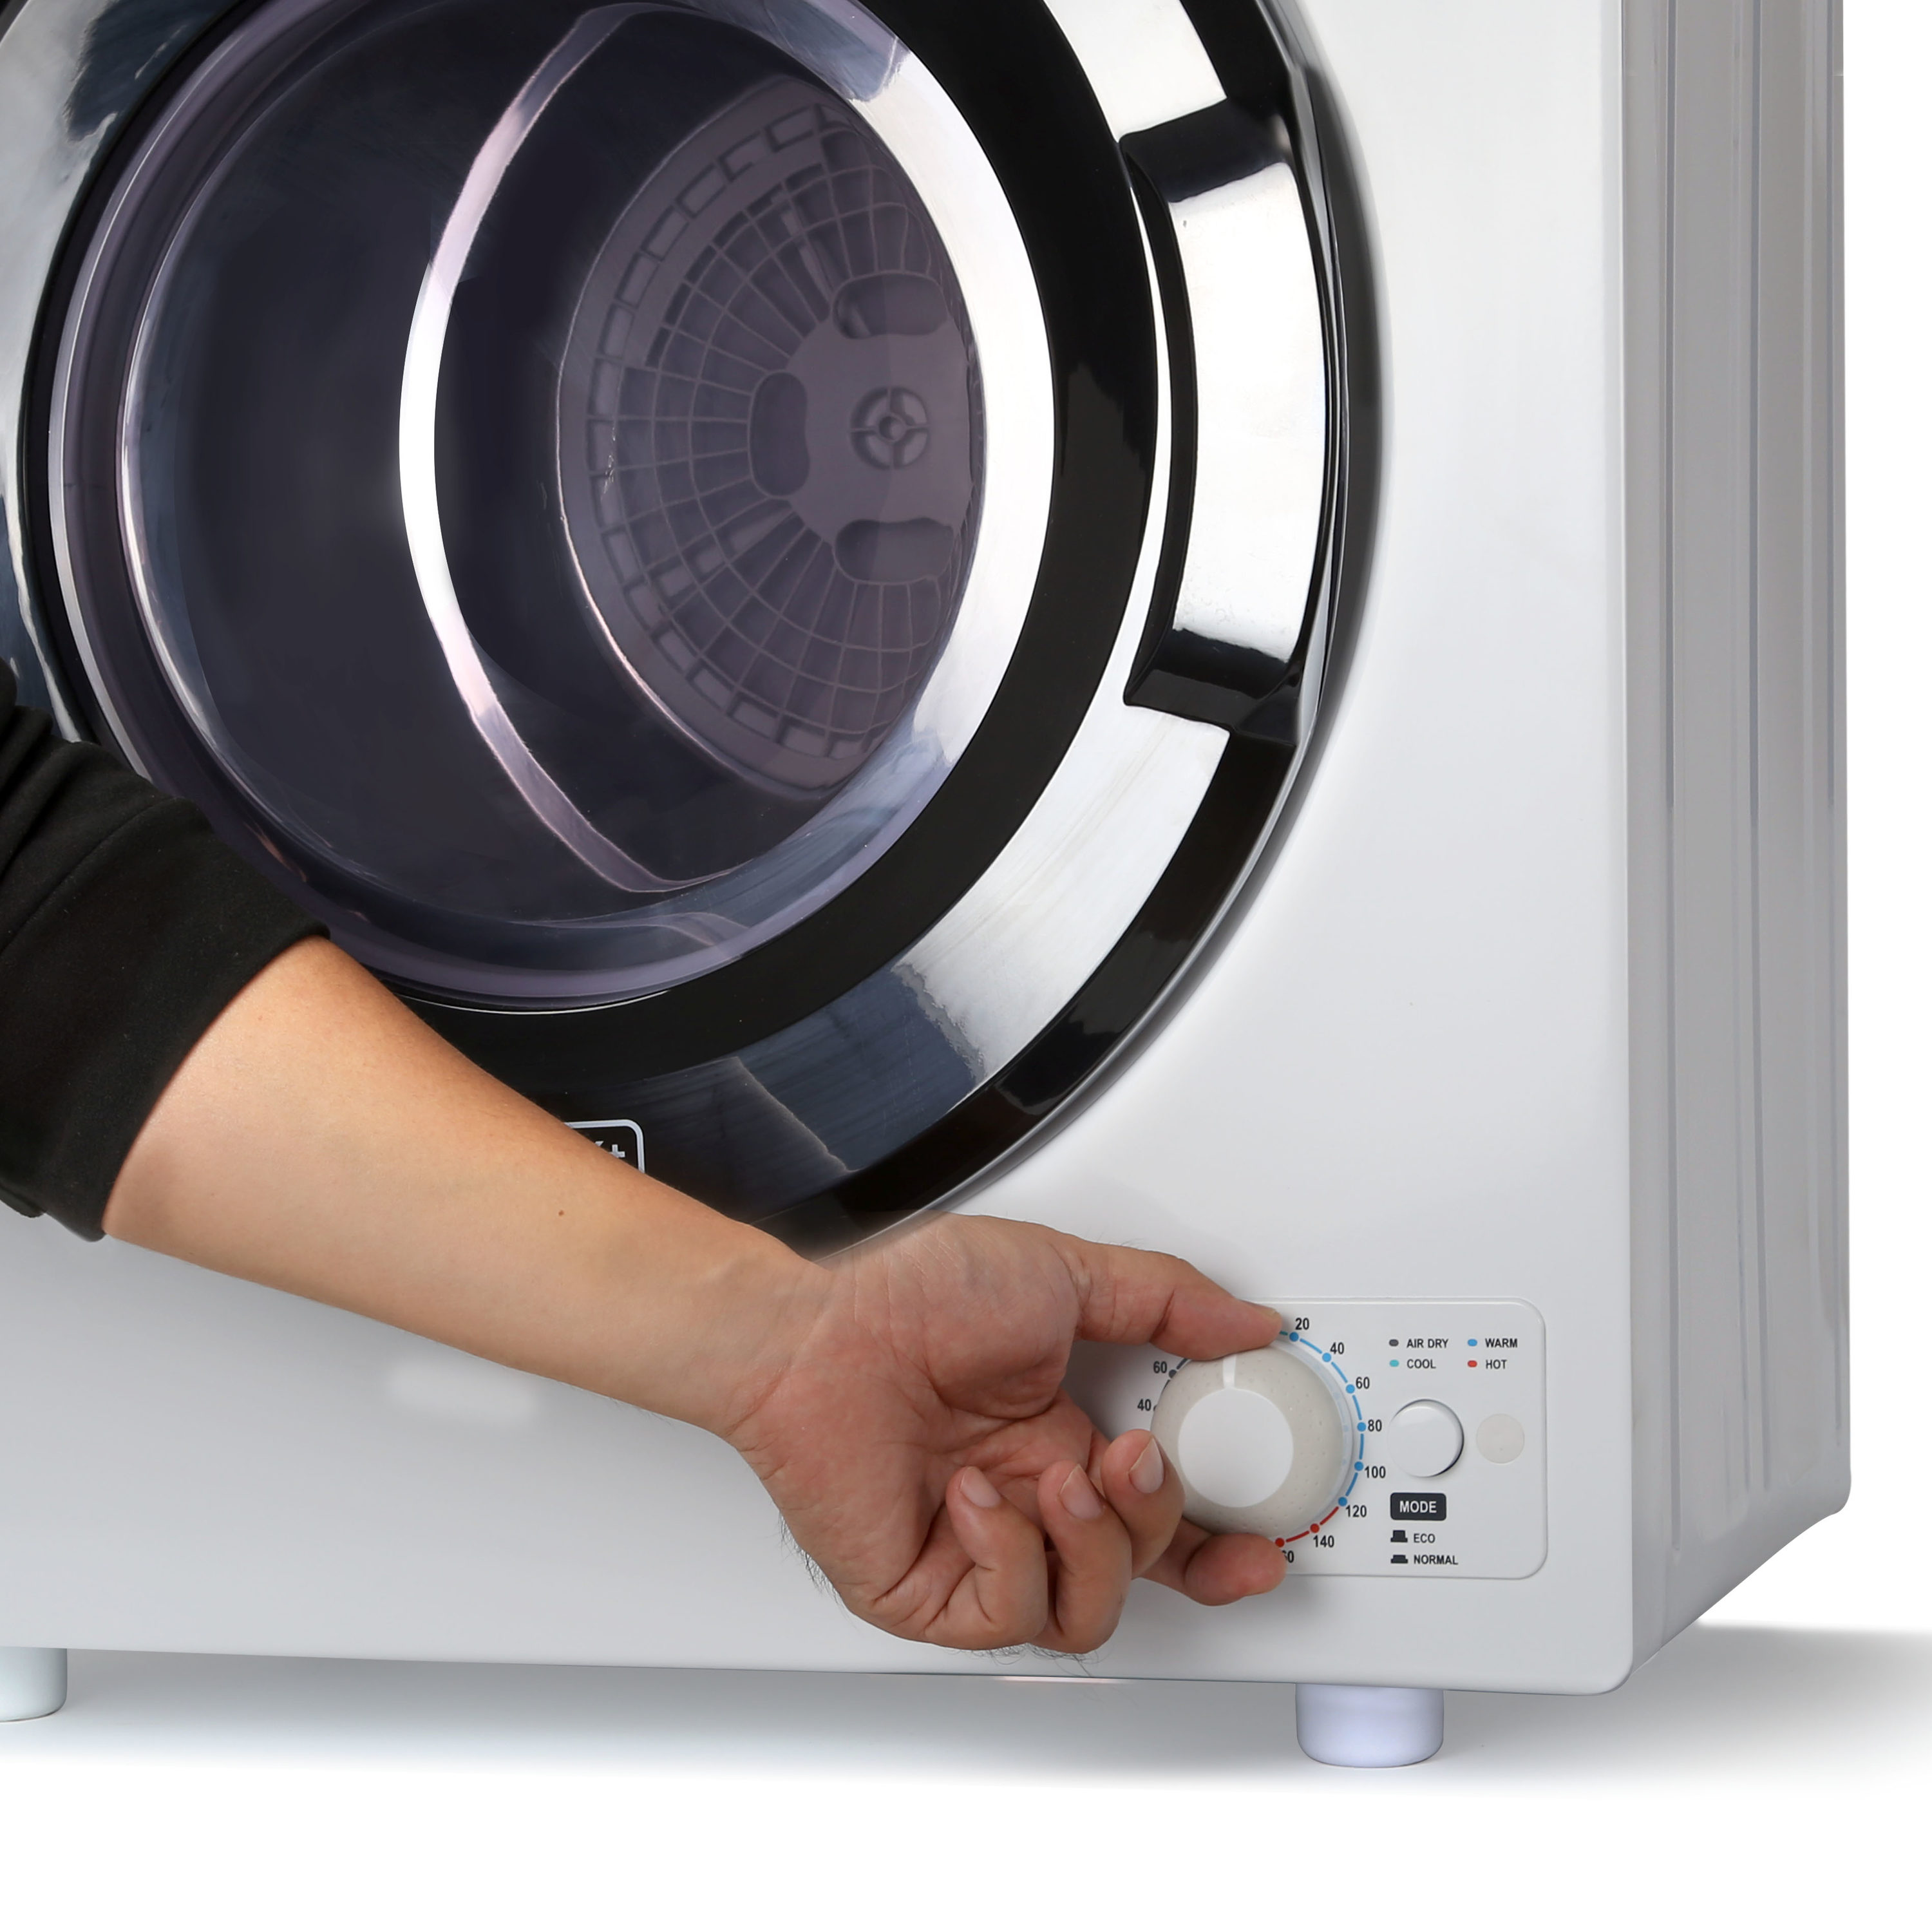 Black & Decker BCED26 2.6 cu. ft. Capacity Compact Dryer, Buy Now